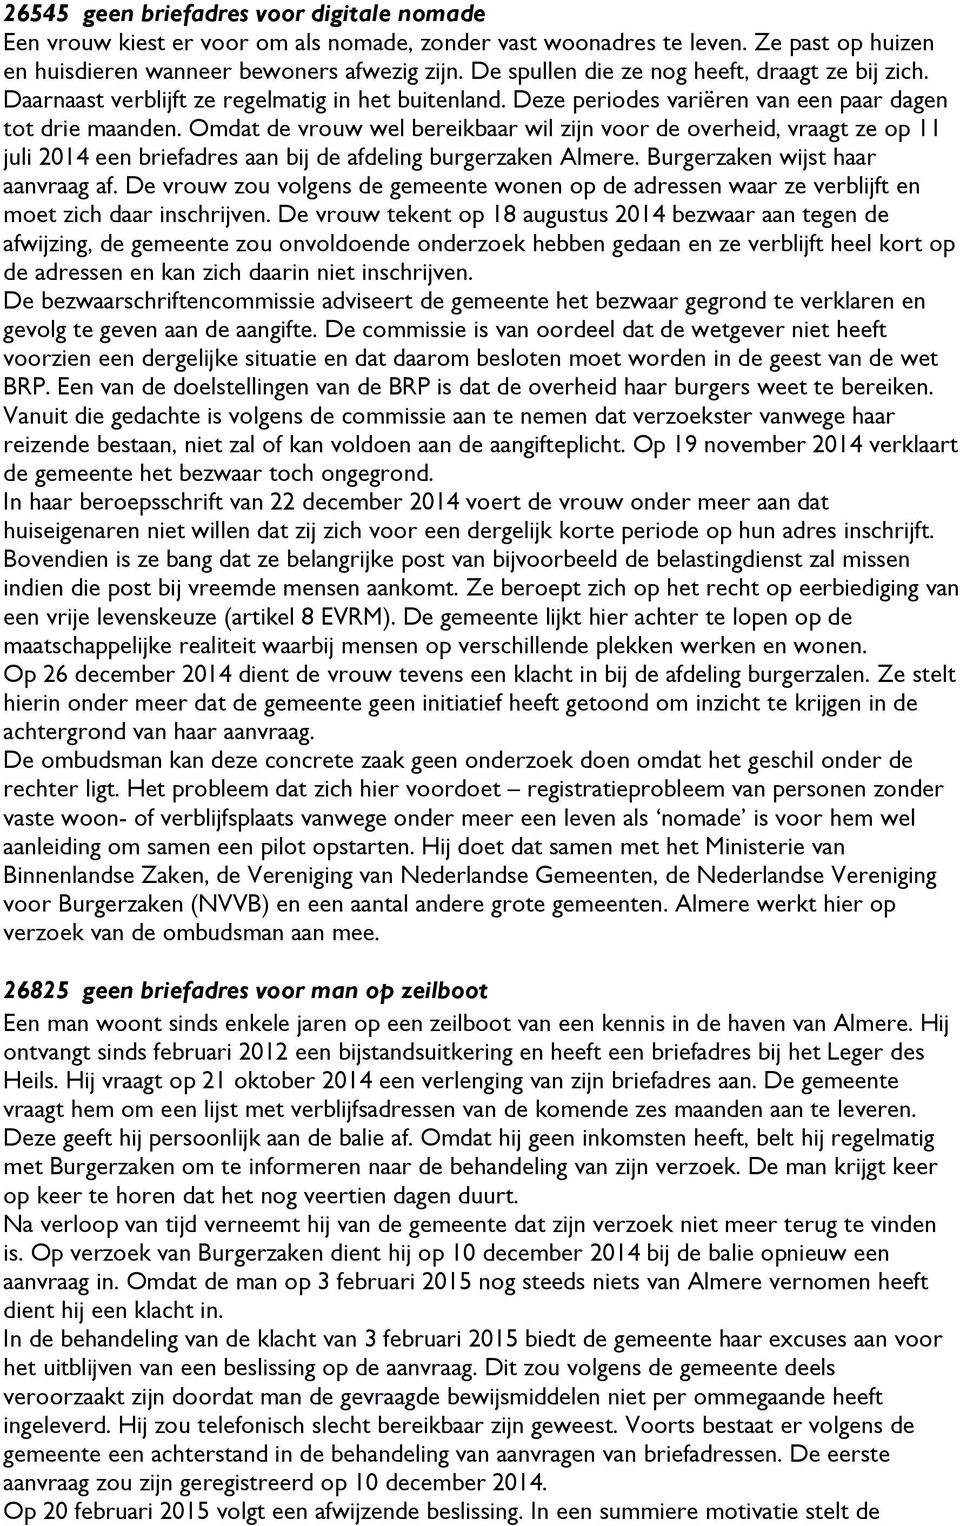 Omdat de vrouw wel bereikbaar wil zijn voor de overheid, vraagt ze op 11 juli 2014 een briefadres aan bij de afdeling burgerzaken Almere. Burgerzaken wijst haar aanvraag af.